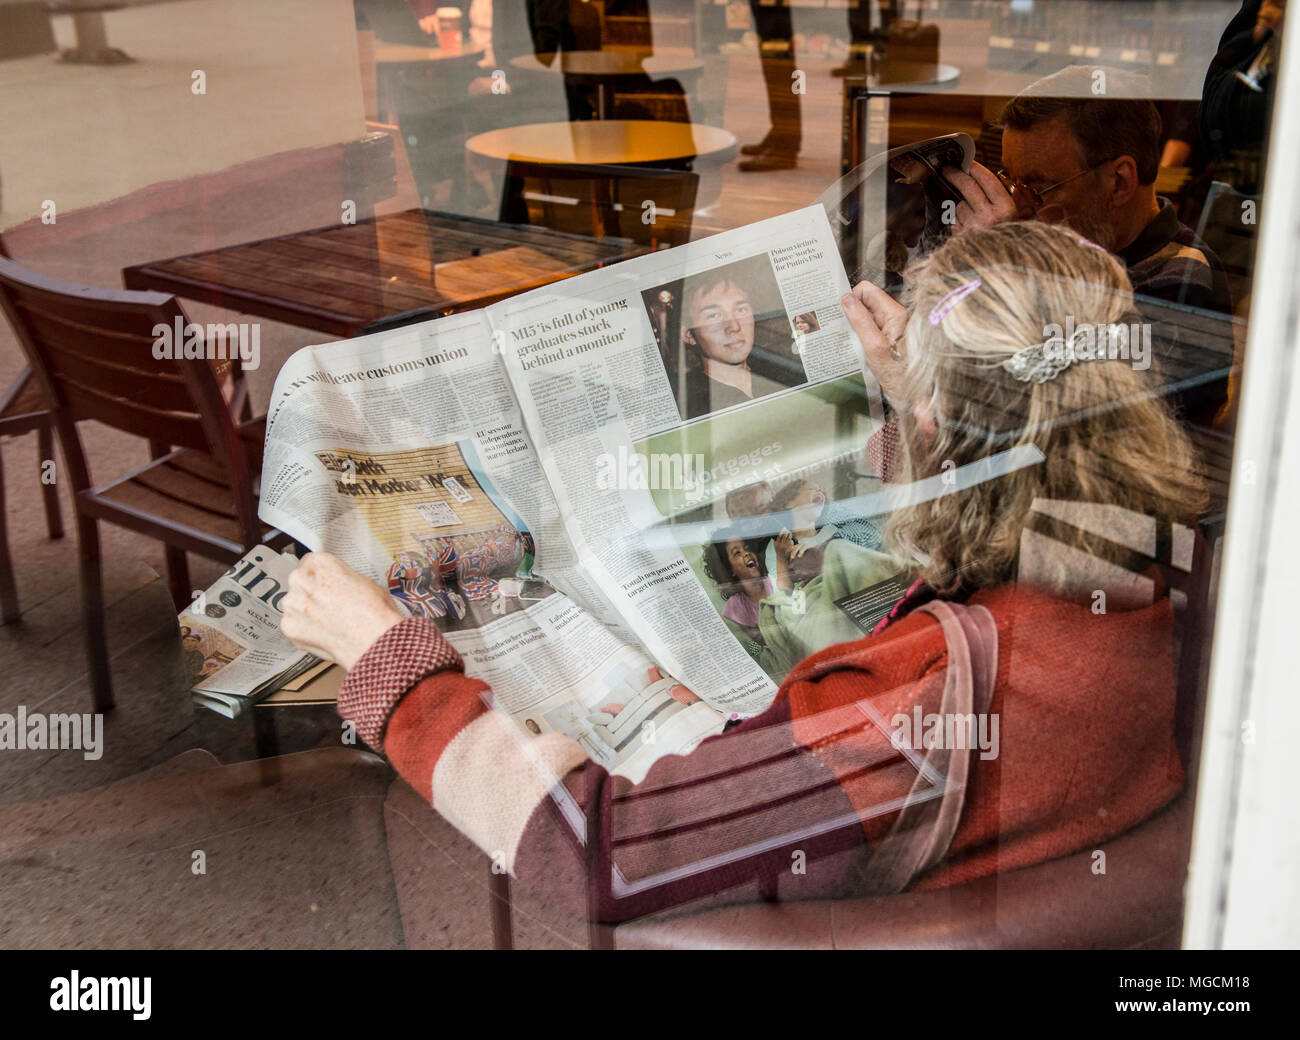 Frau sitzt im Cafe, lesen Zeitung, durch Glas Fenster gesehen, Reflexion von Gartenmöbeln im Fenster Stockfoto